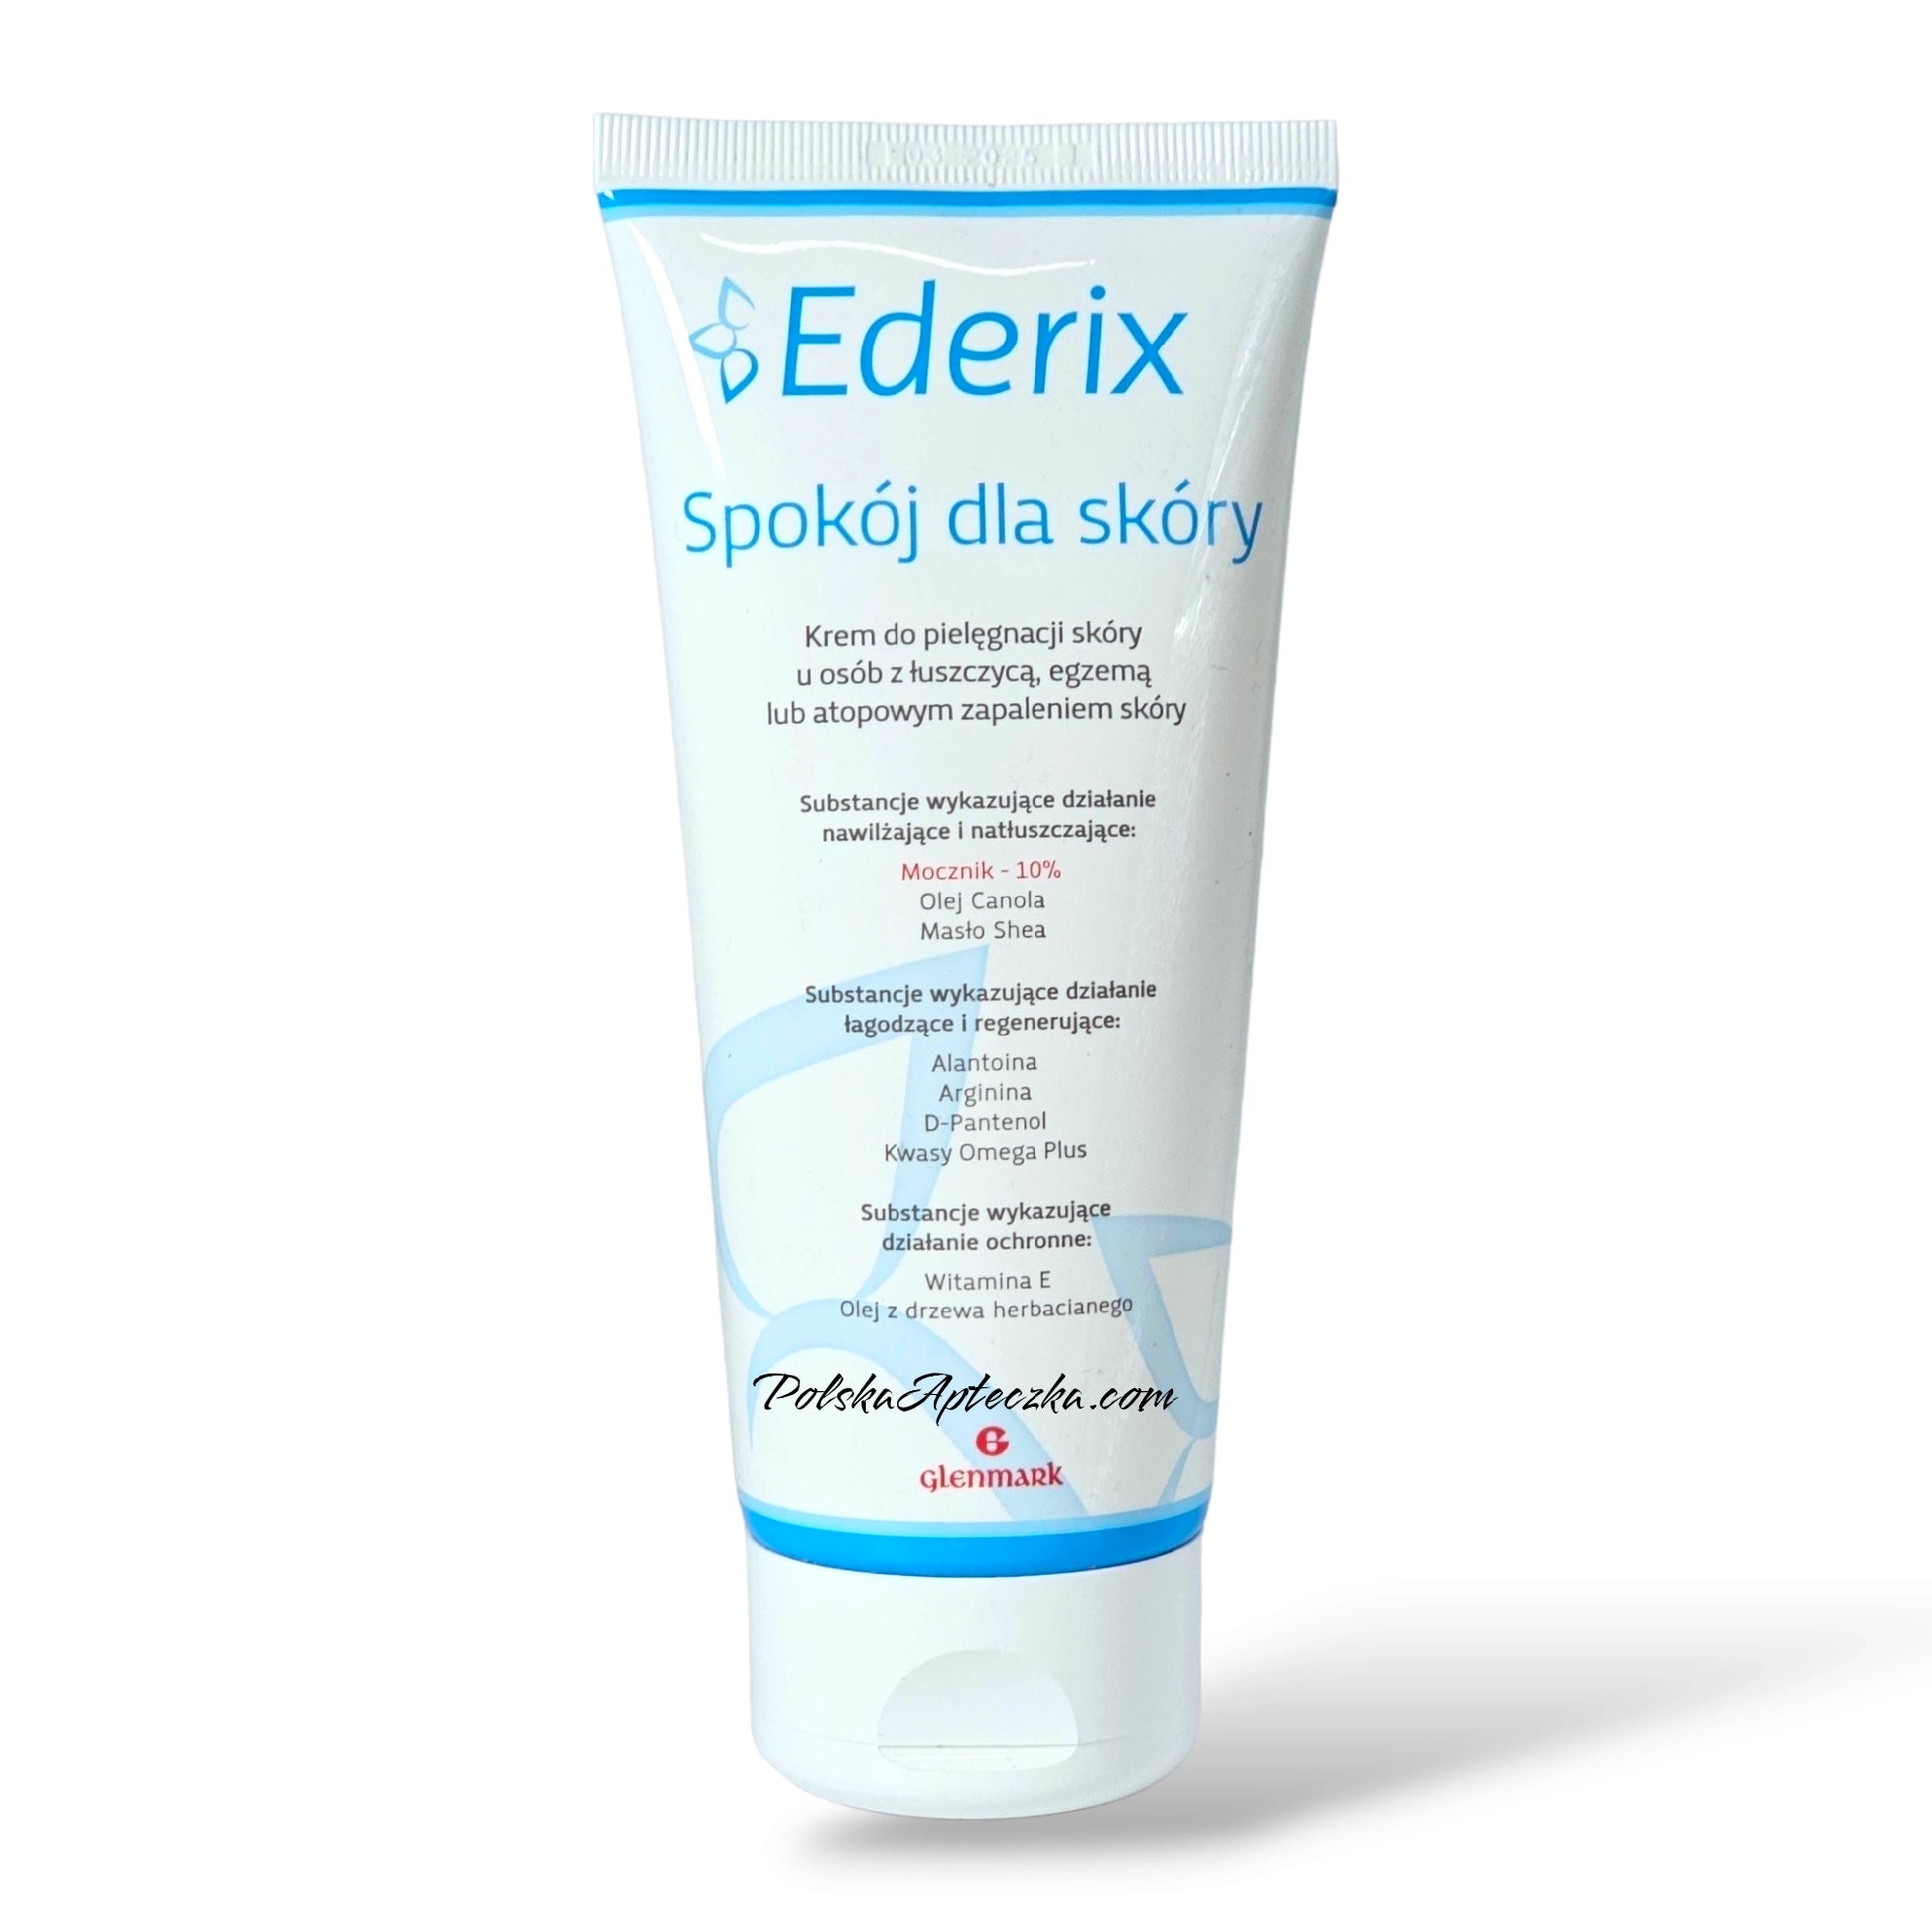 Ederix cream